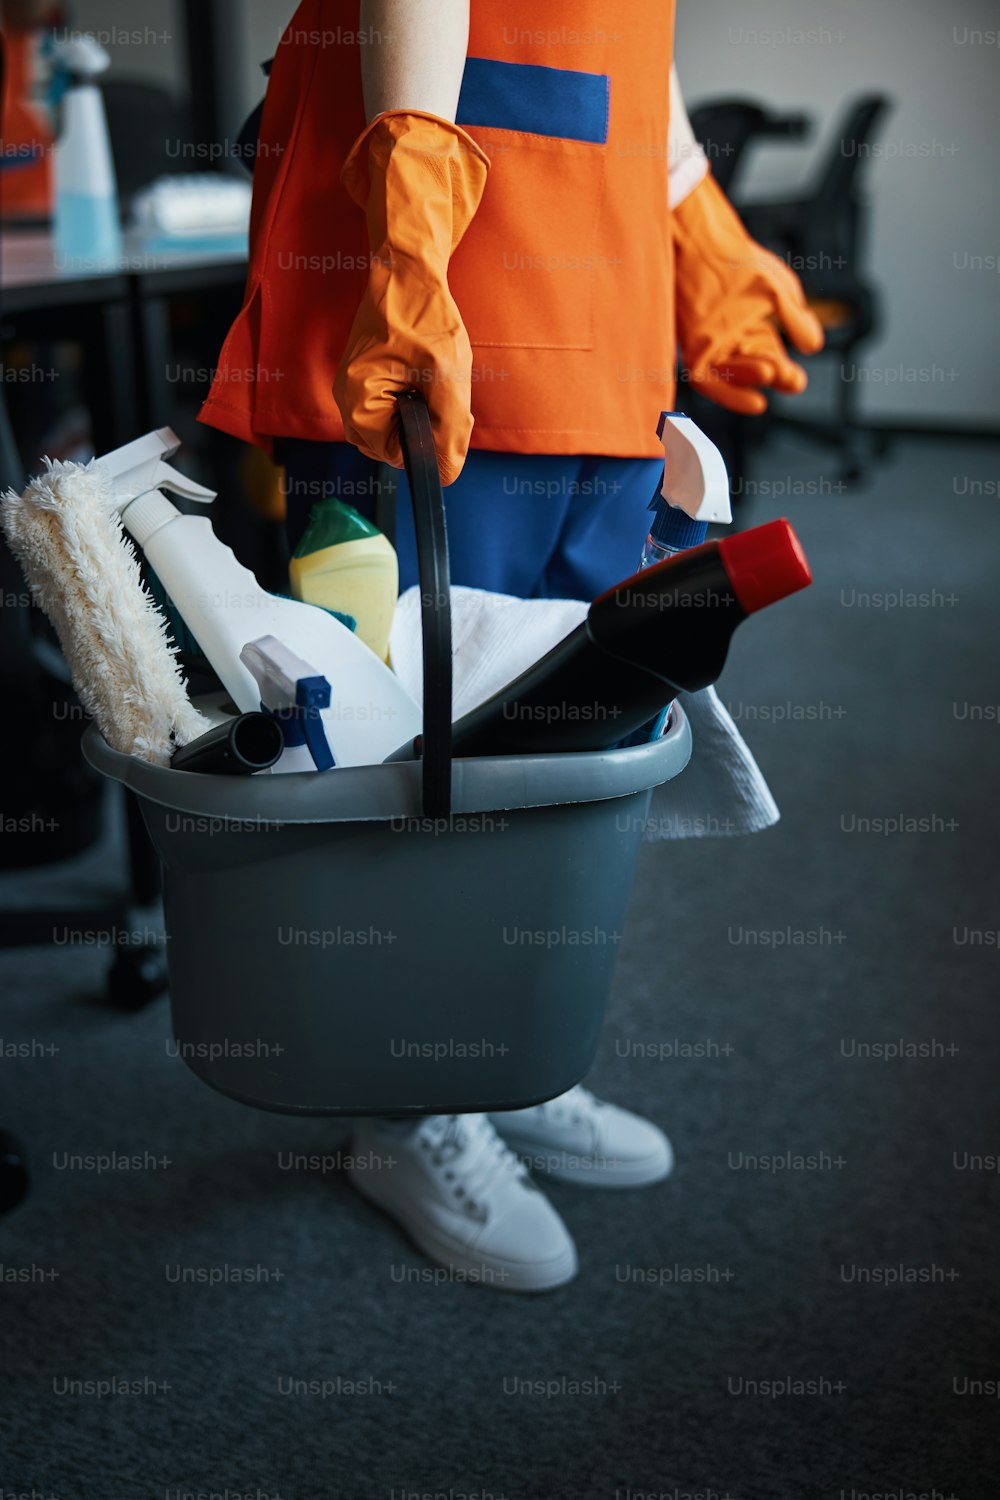 洗浄剤の入ったプラスチックのバケツを両手で持っている女性清掃員のトリミング写真